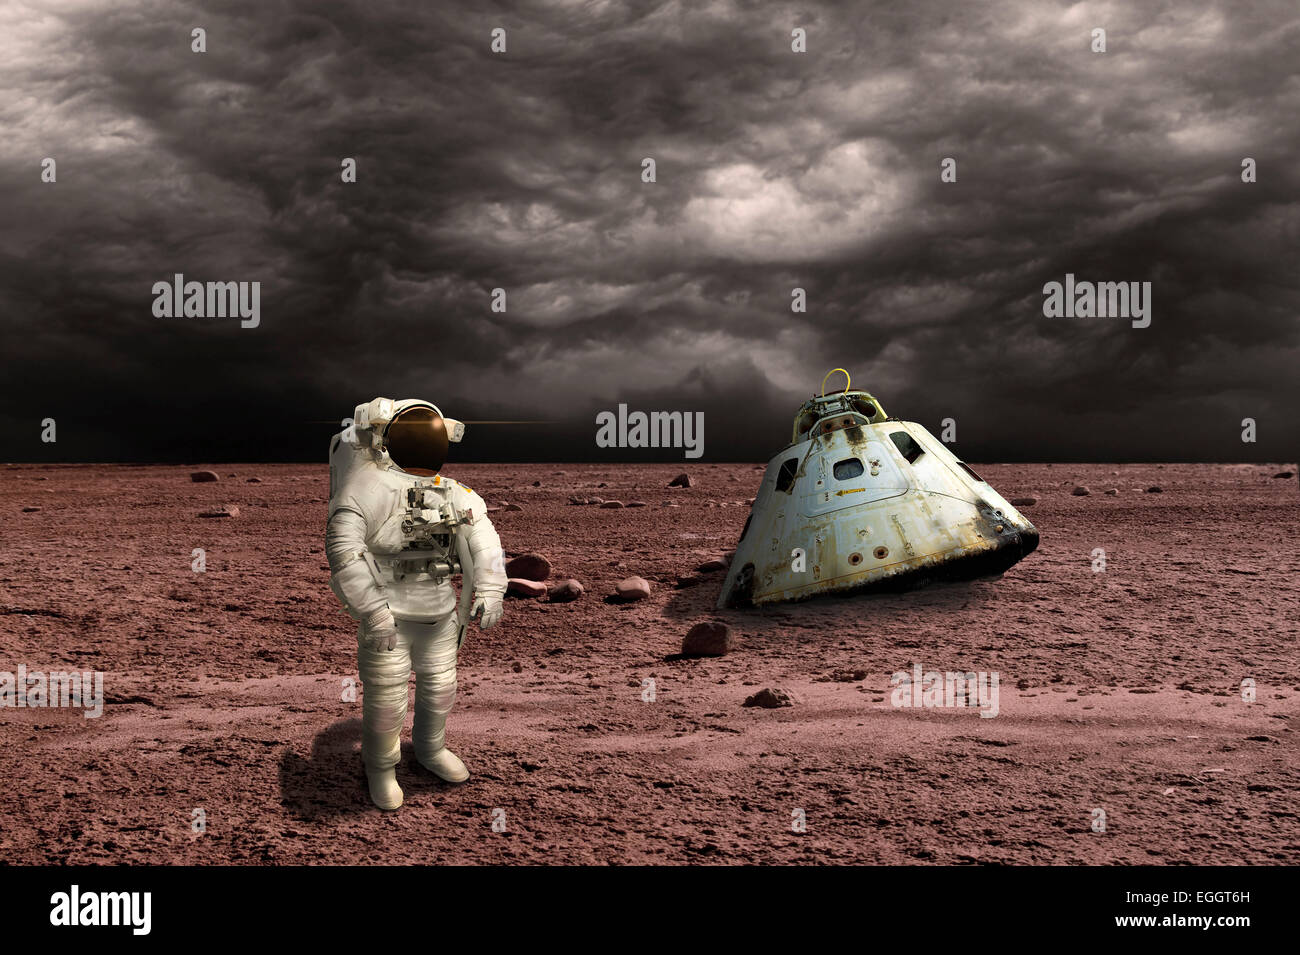 Ein Astronaut einen Überblick über seine Situation nach wird auf einem kargen Planeten gestrandet. Bedrohliche Wolken bilden in der Ferne während seiner scorch Stockfoto